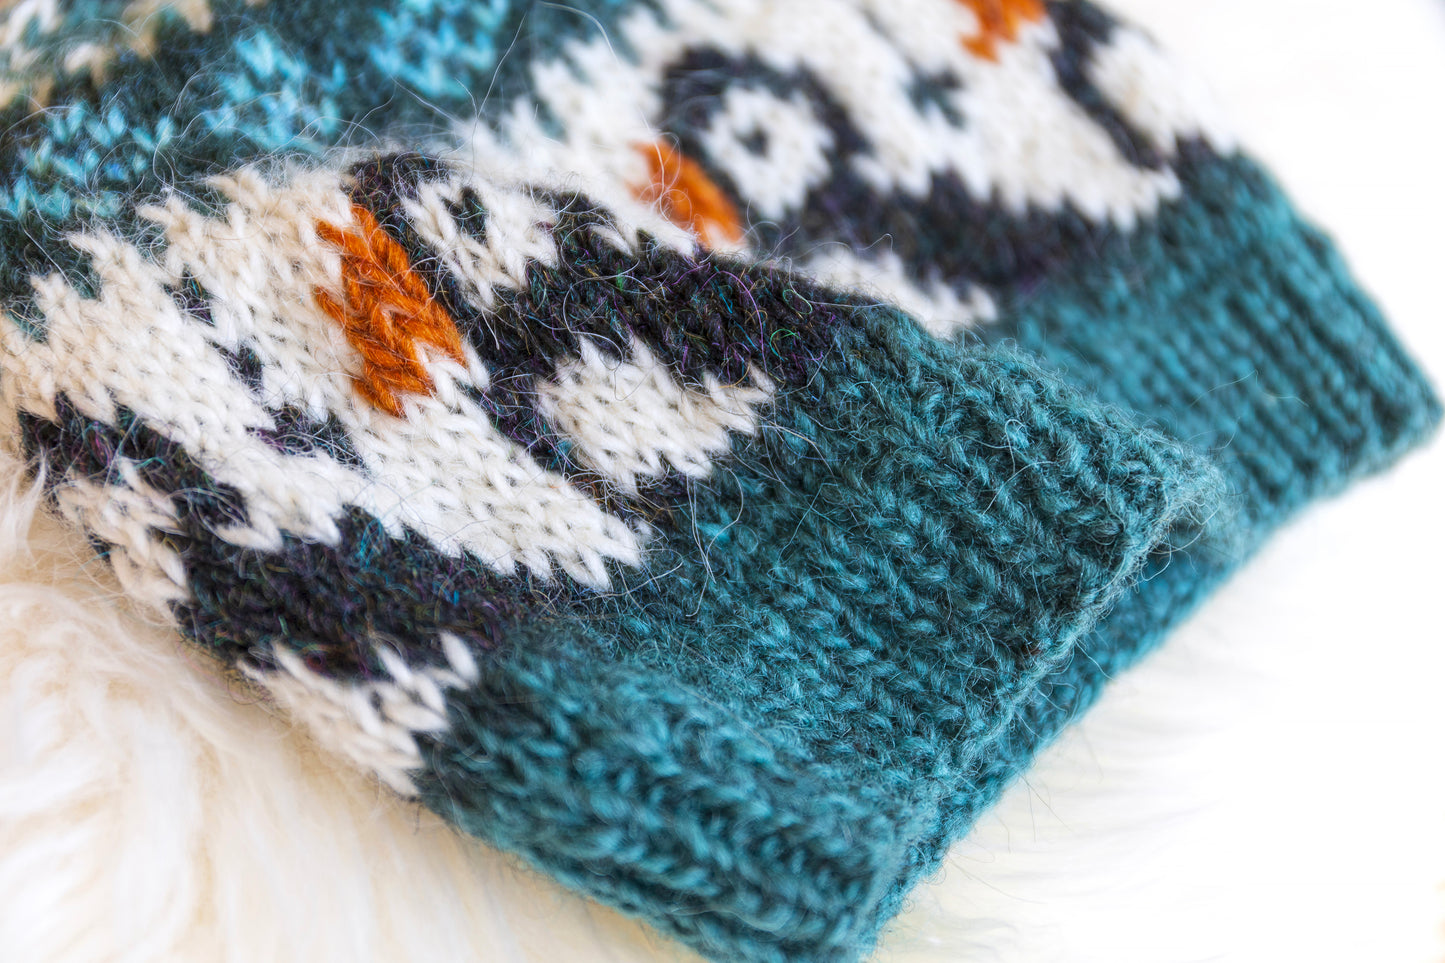 Puffin Hat Knitting Pattern